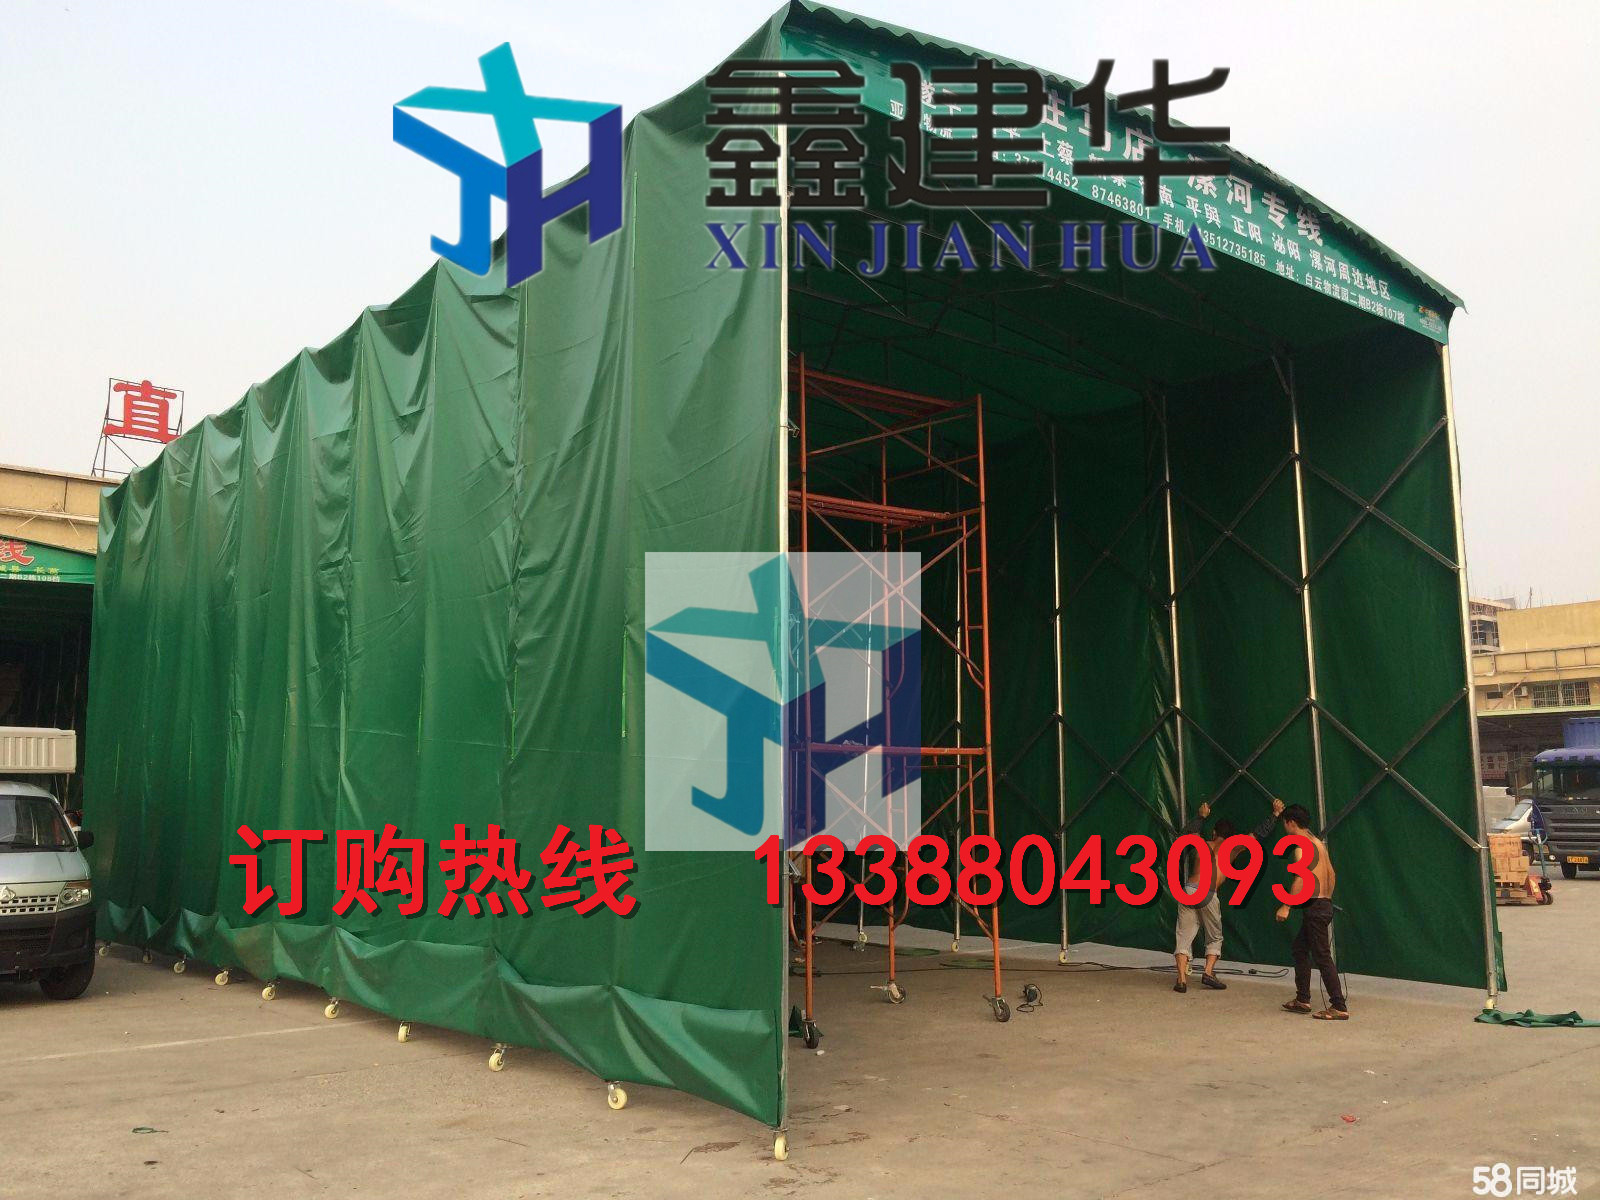 天津鑫建华厂家直销大型车大型帐篷图片